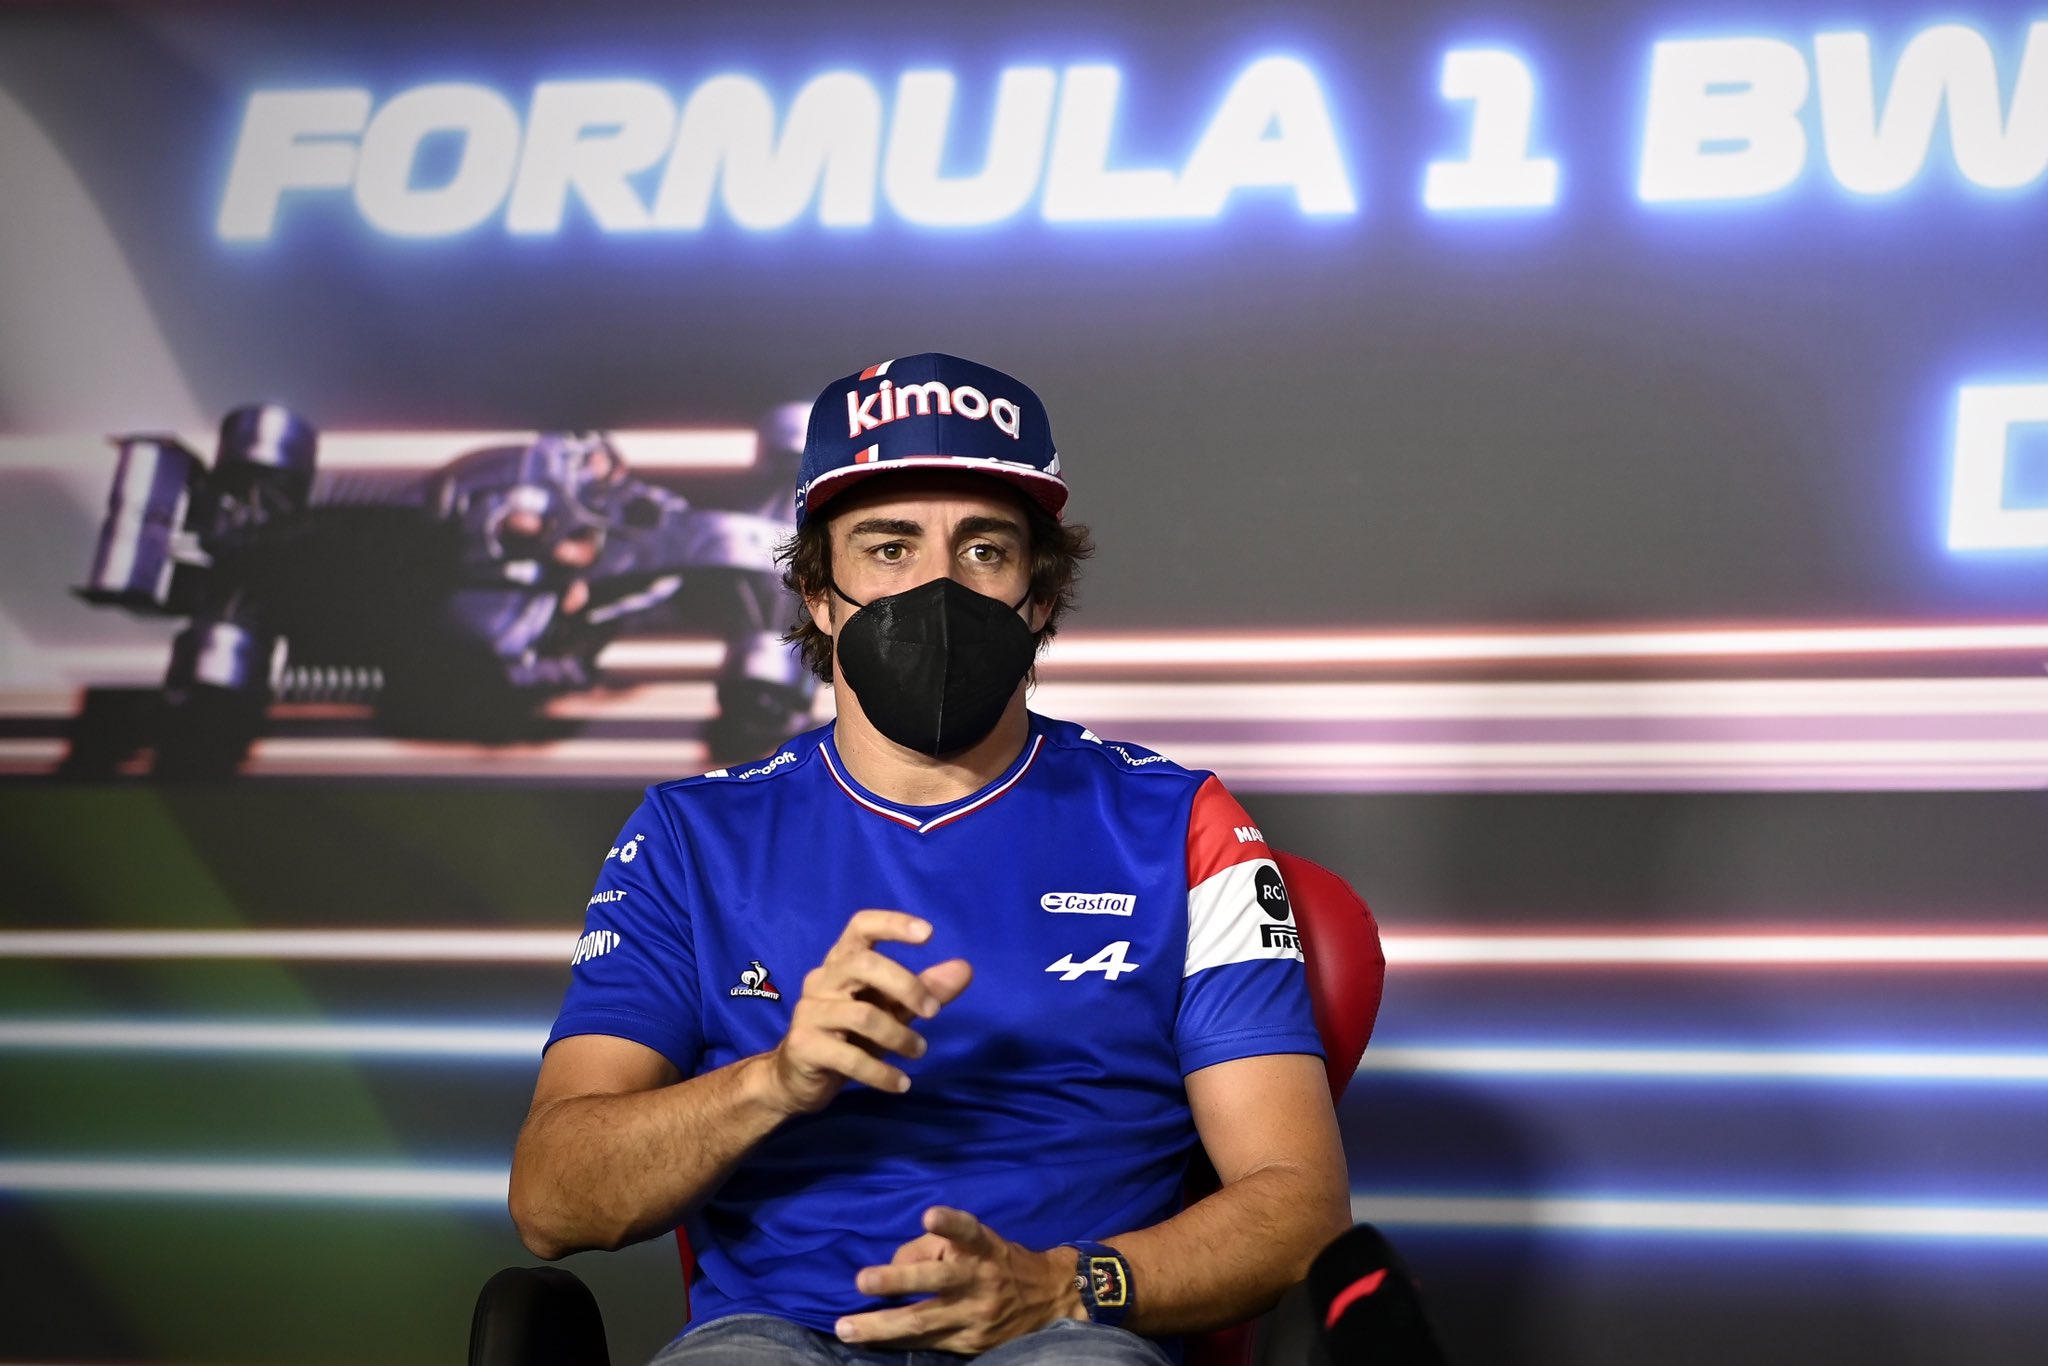 Alonso F1